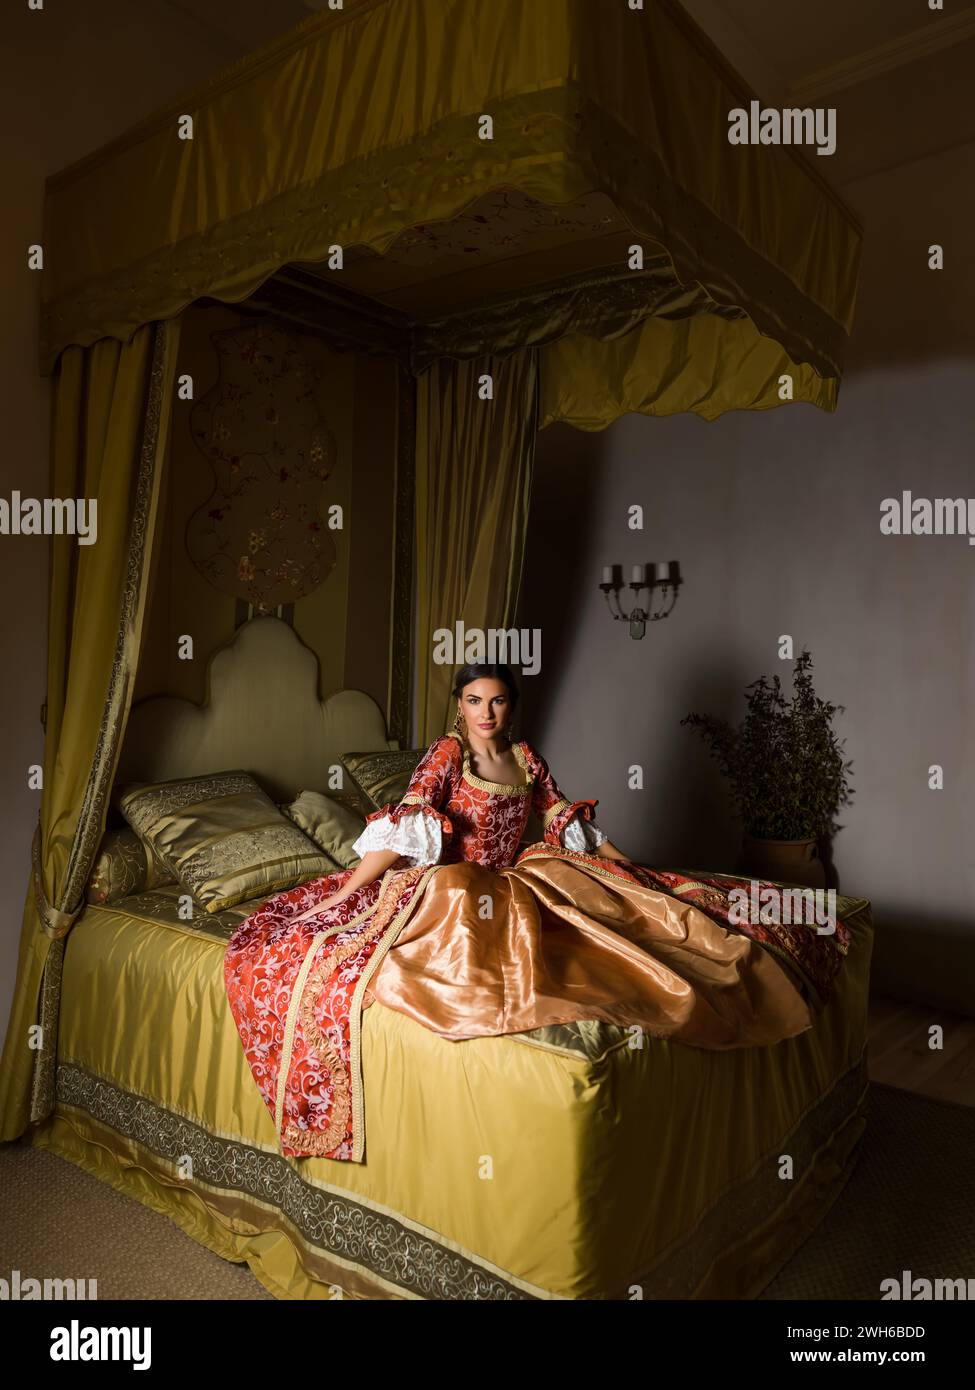 Goldenes mittelalterliches Schlafzimmer mit schönem Himmelbett. Eine Dame im Renaissance-Kleid sitzt auf dem Bett. Stockfoto